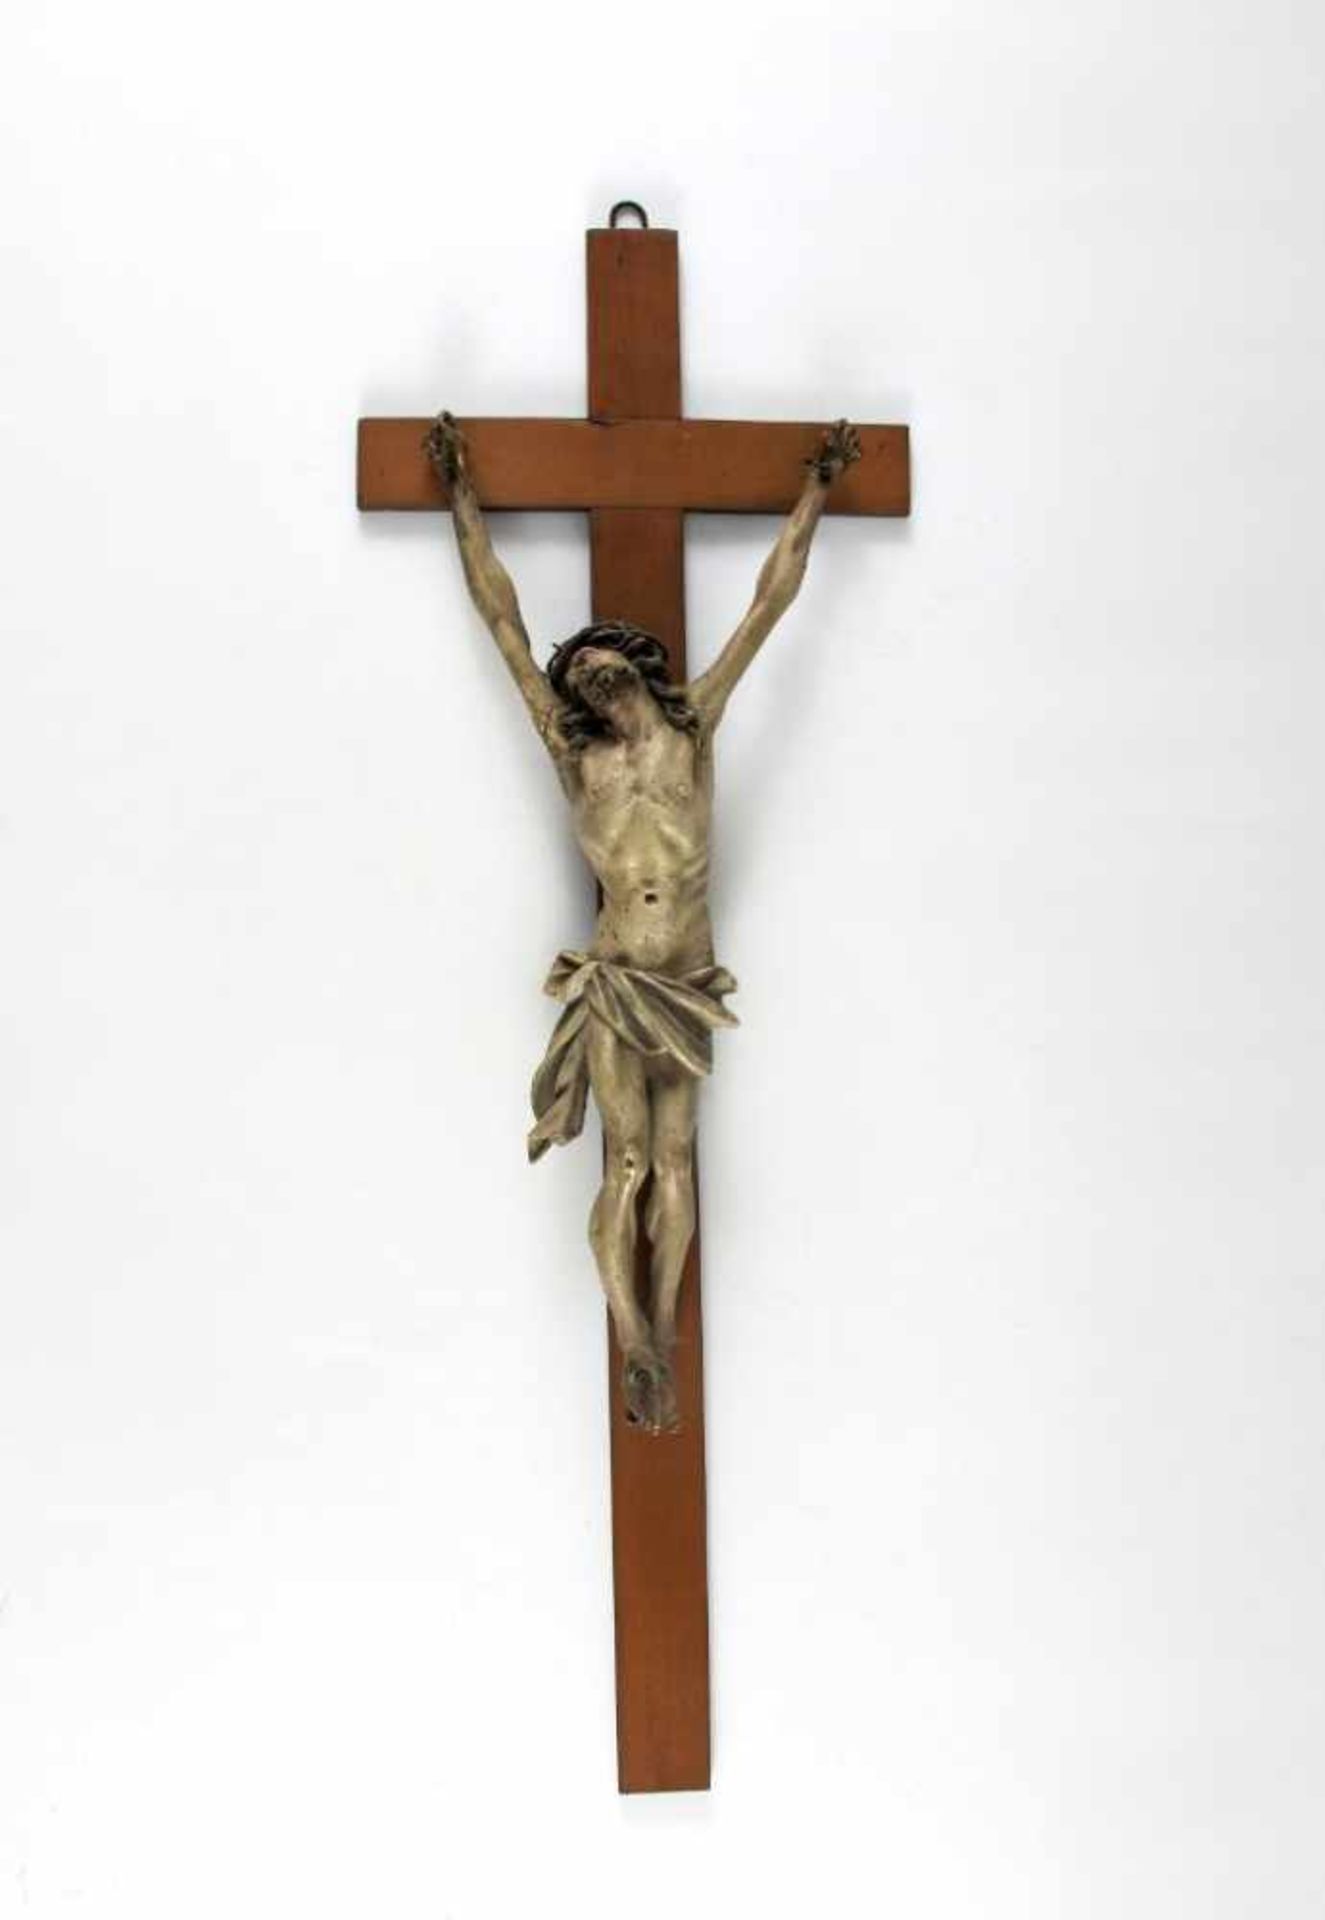 Wandkruzifix. Dreinageltypus. Holz gefasst. 19. Jh. H 44 cm